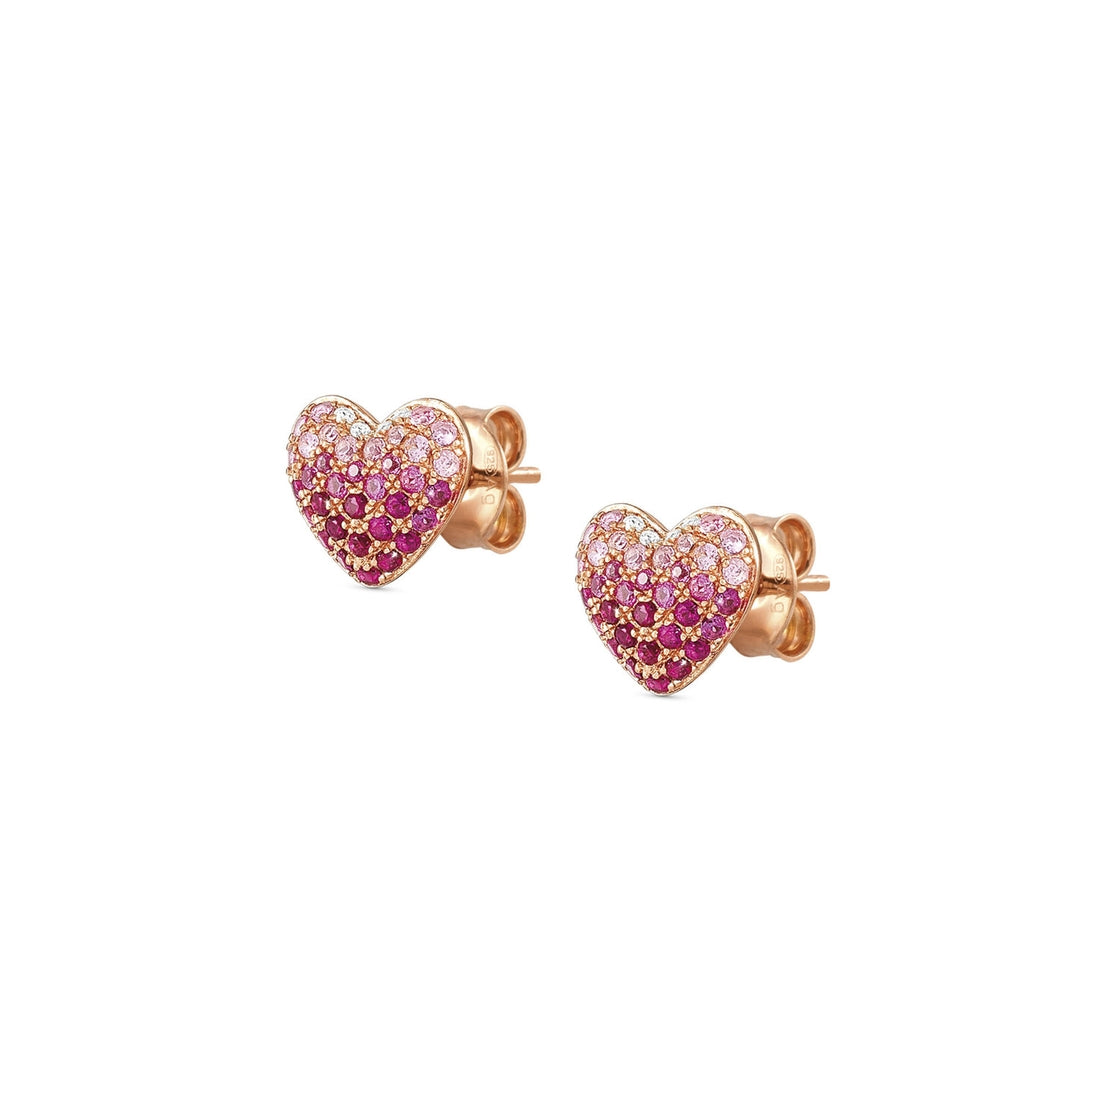 Orecchini Nomination Crysalis a cuore in argento con pavè di zirconi rosa